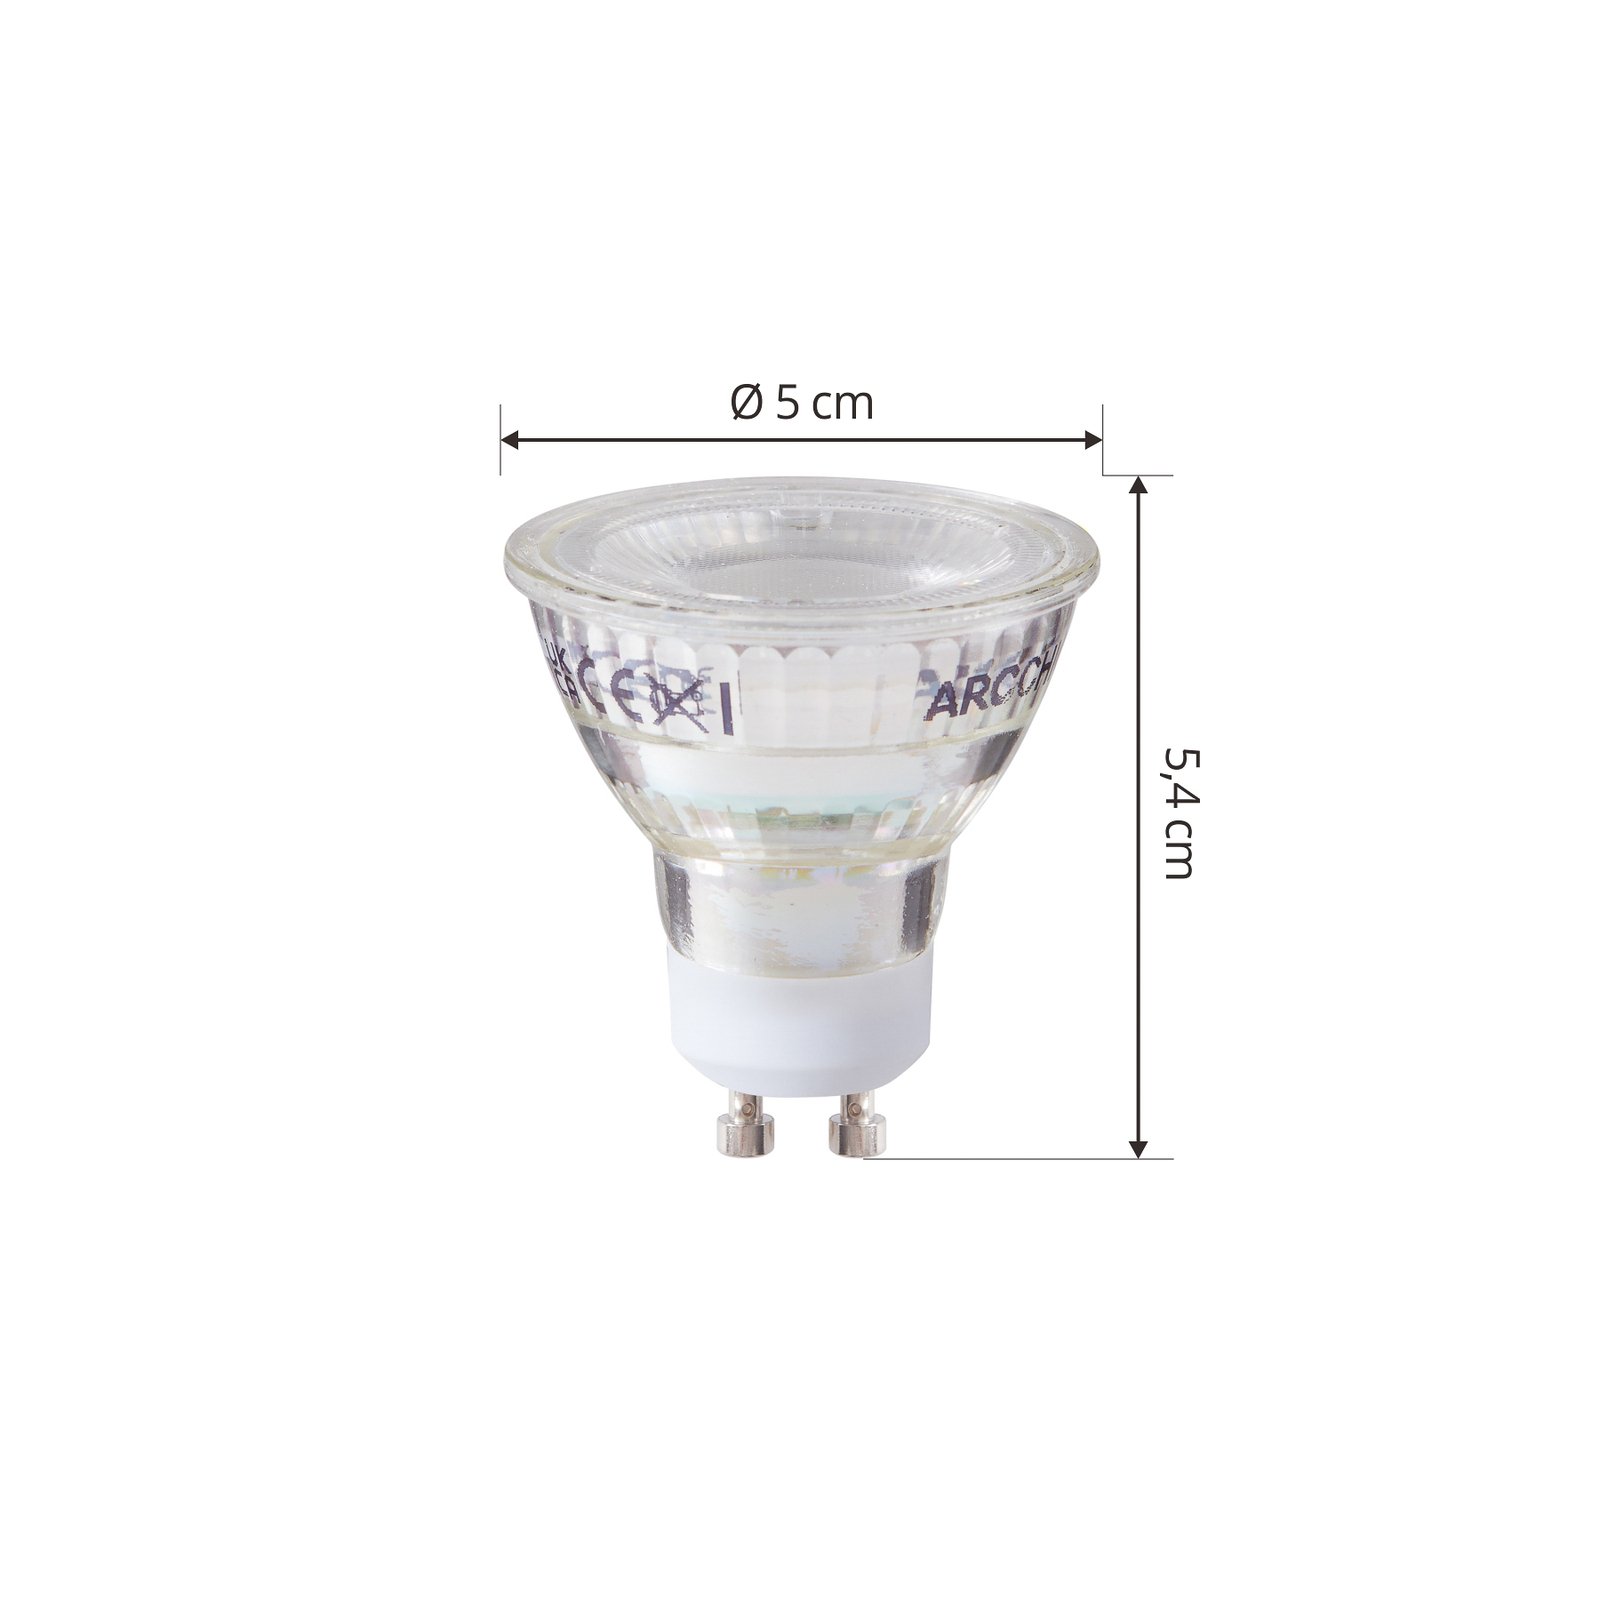 Arcchio Bombilla LED GU10 2.5W 6500K 450lm cristal set de 10